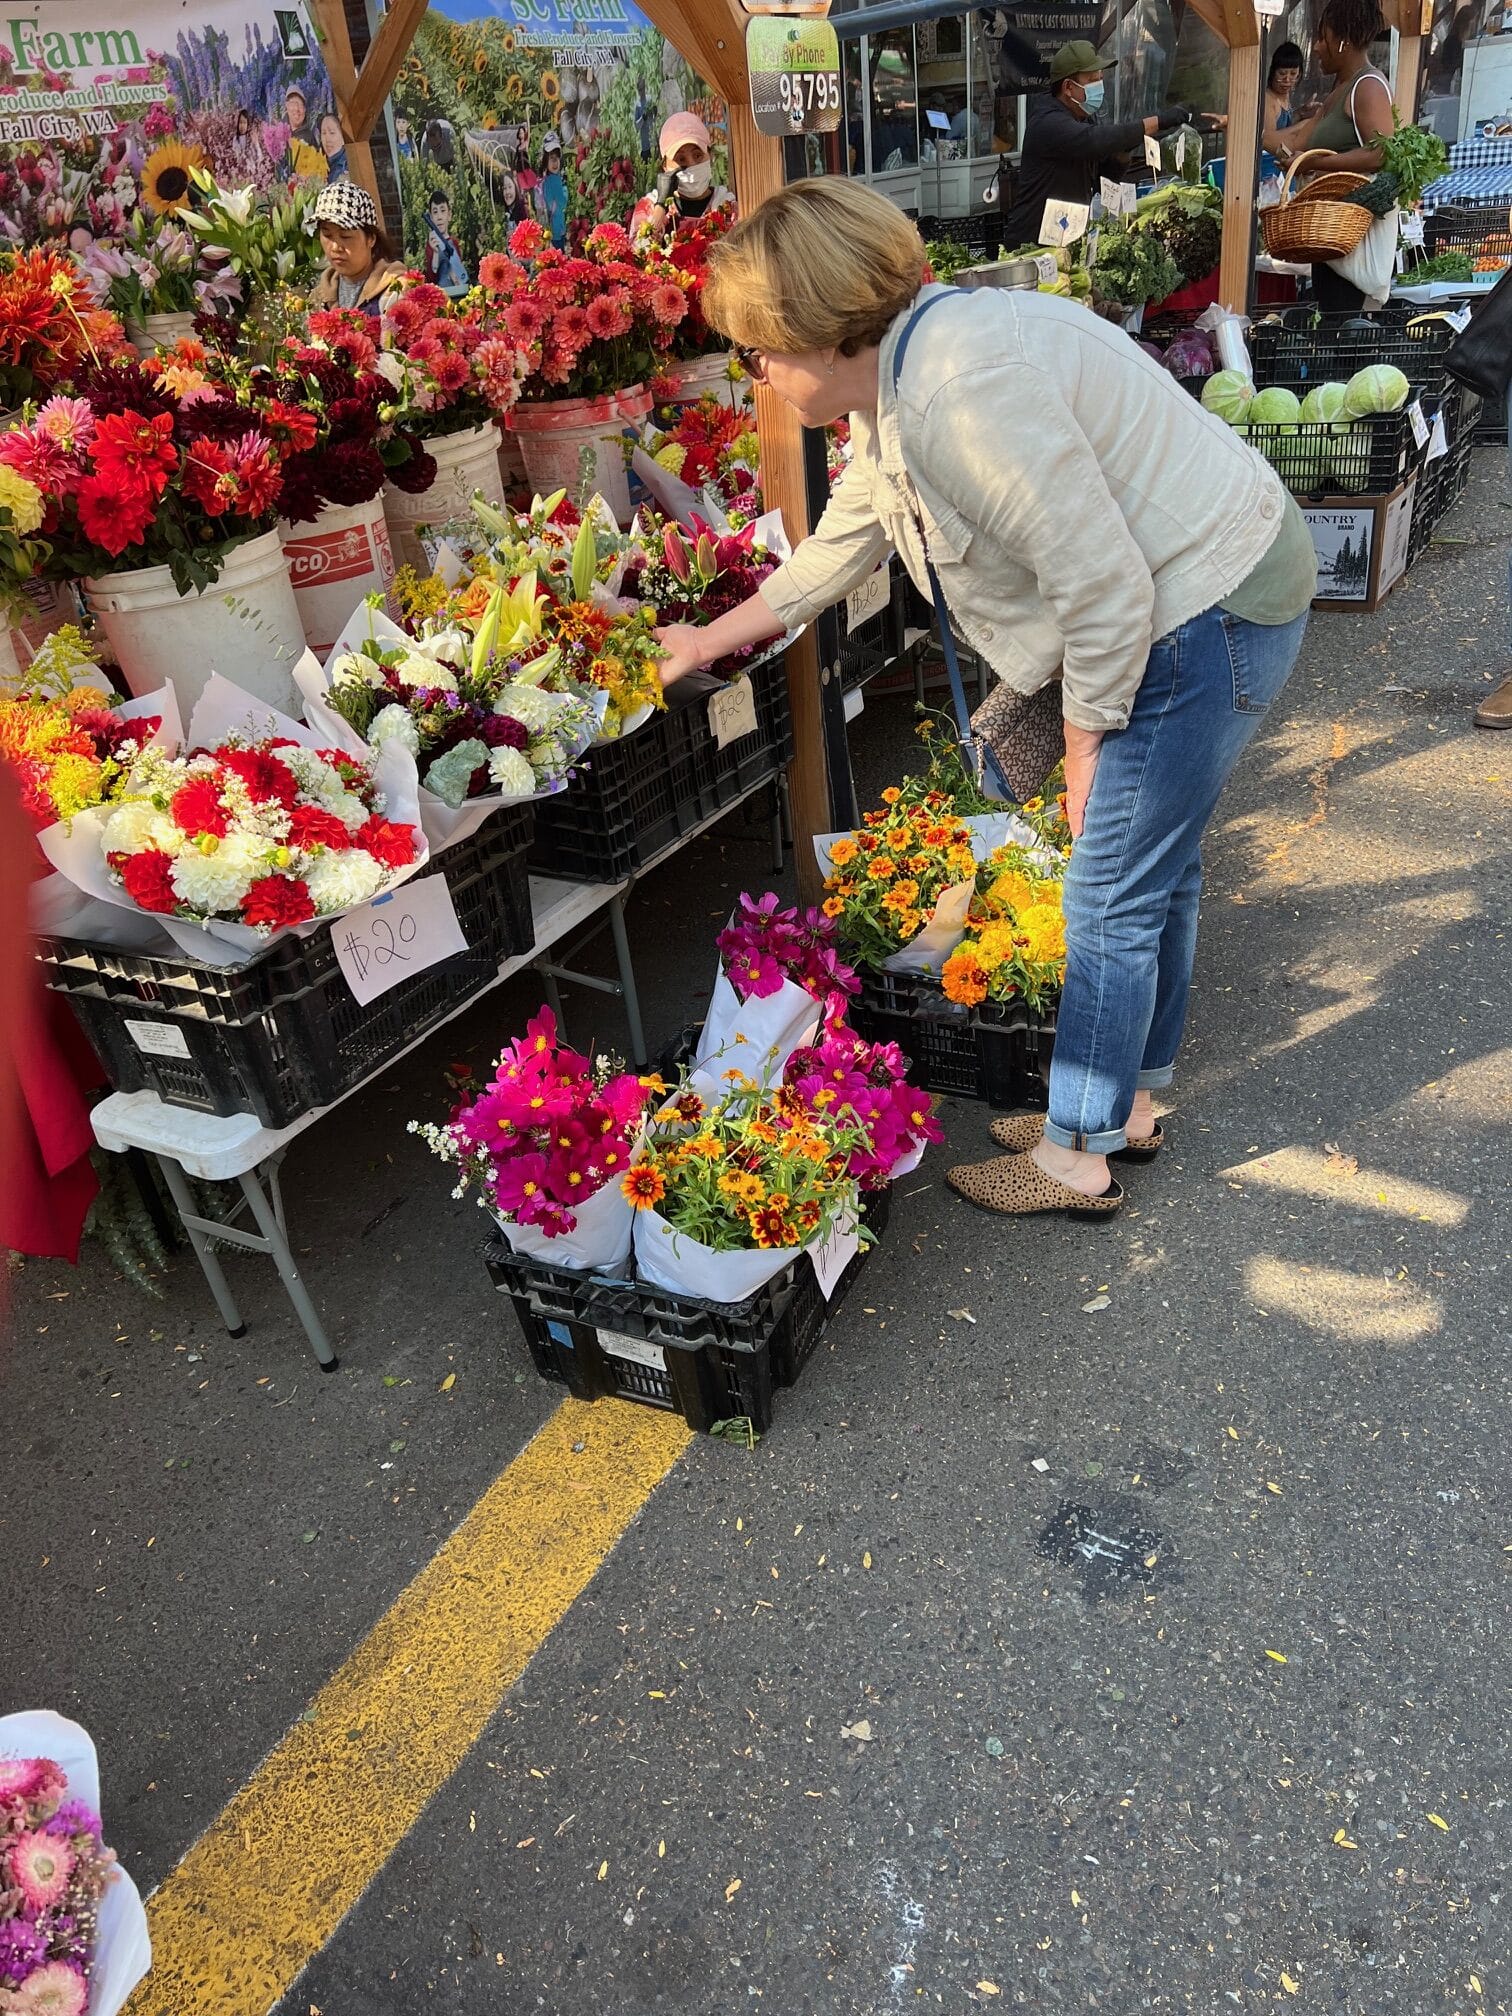 Flower stall on street